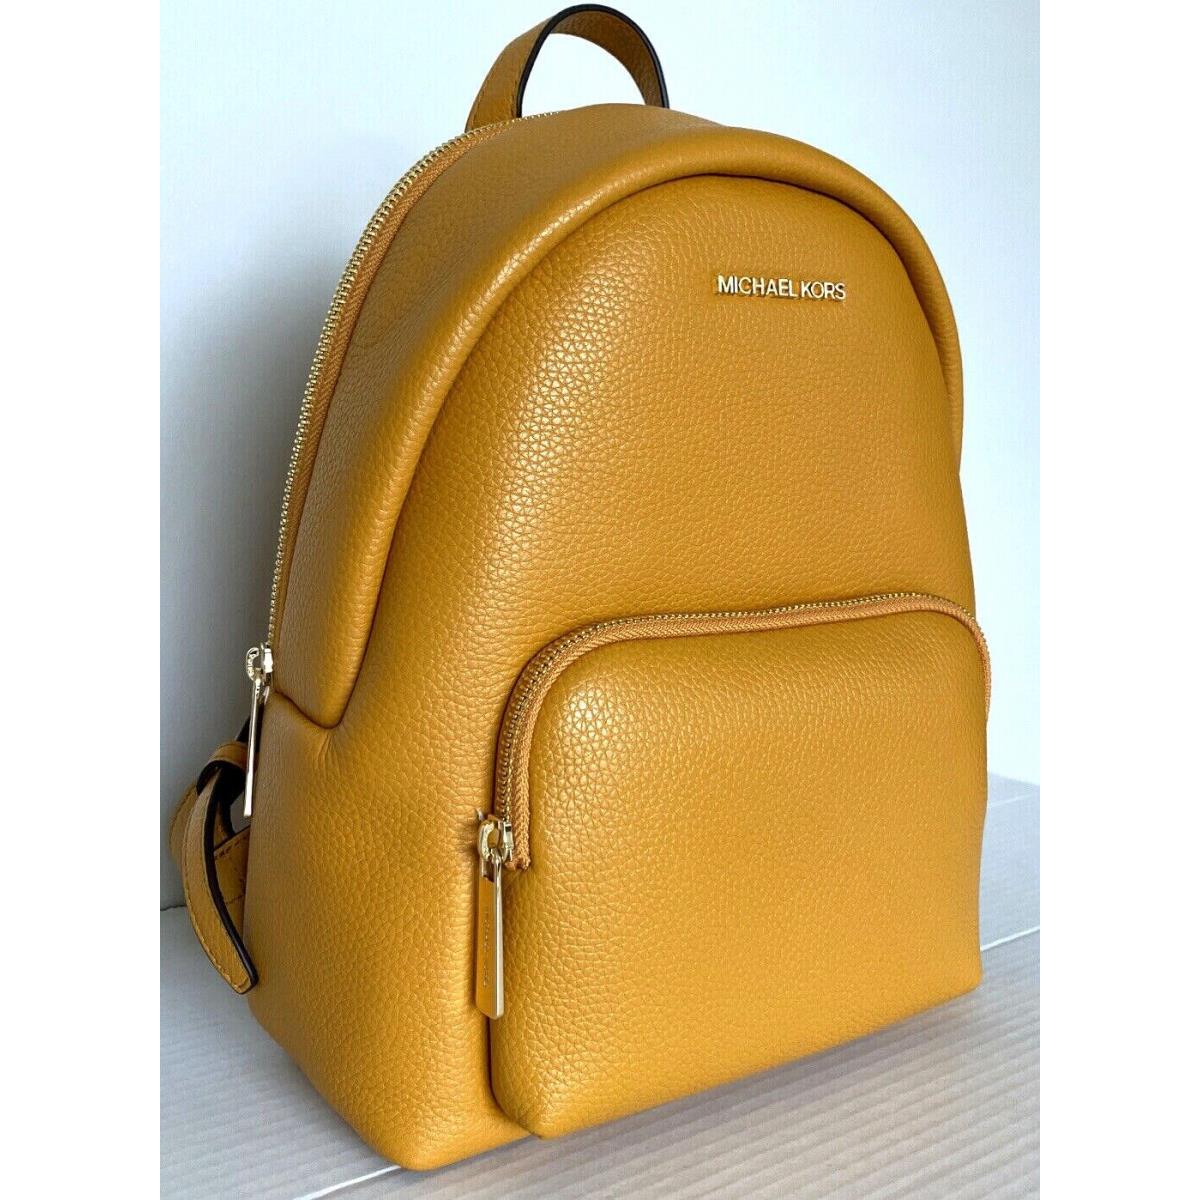 Michael Kors Erin Medium Backpack Pebble Leather Marigold